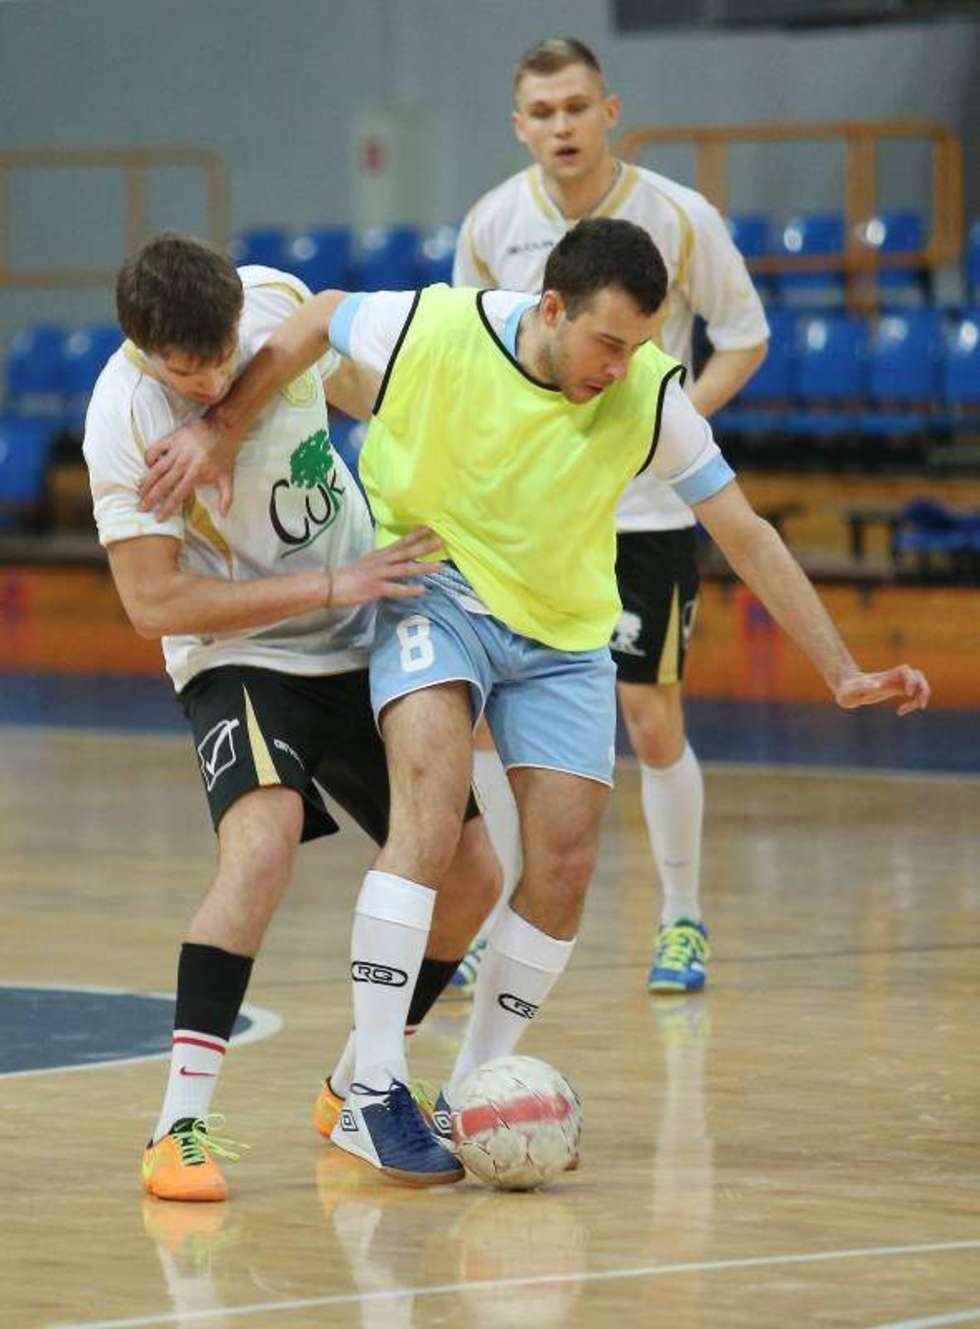  I mistrzostwa Polski dziennikarzy w Futsalu rozegrano w lubelskiej hali MOSiR Globus. Fot. Maciej Kaczanowski